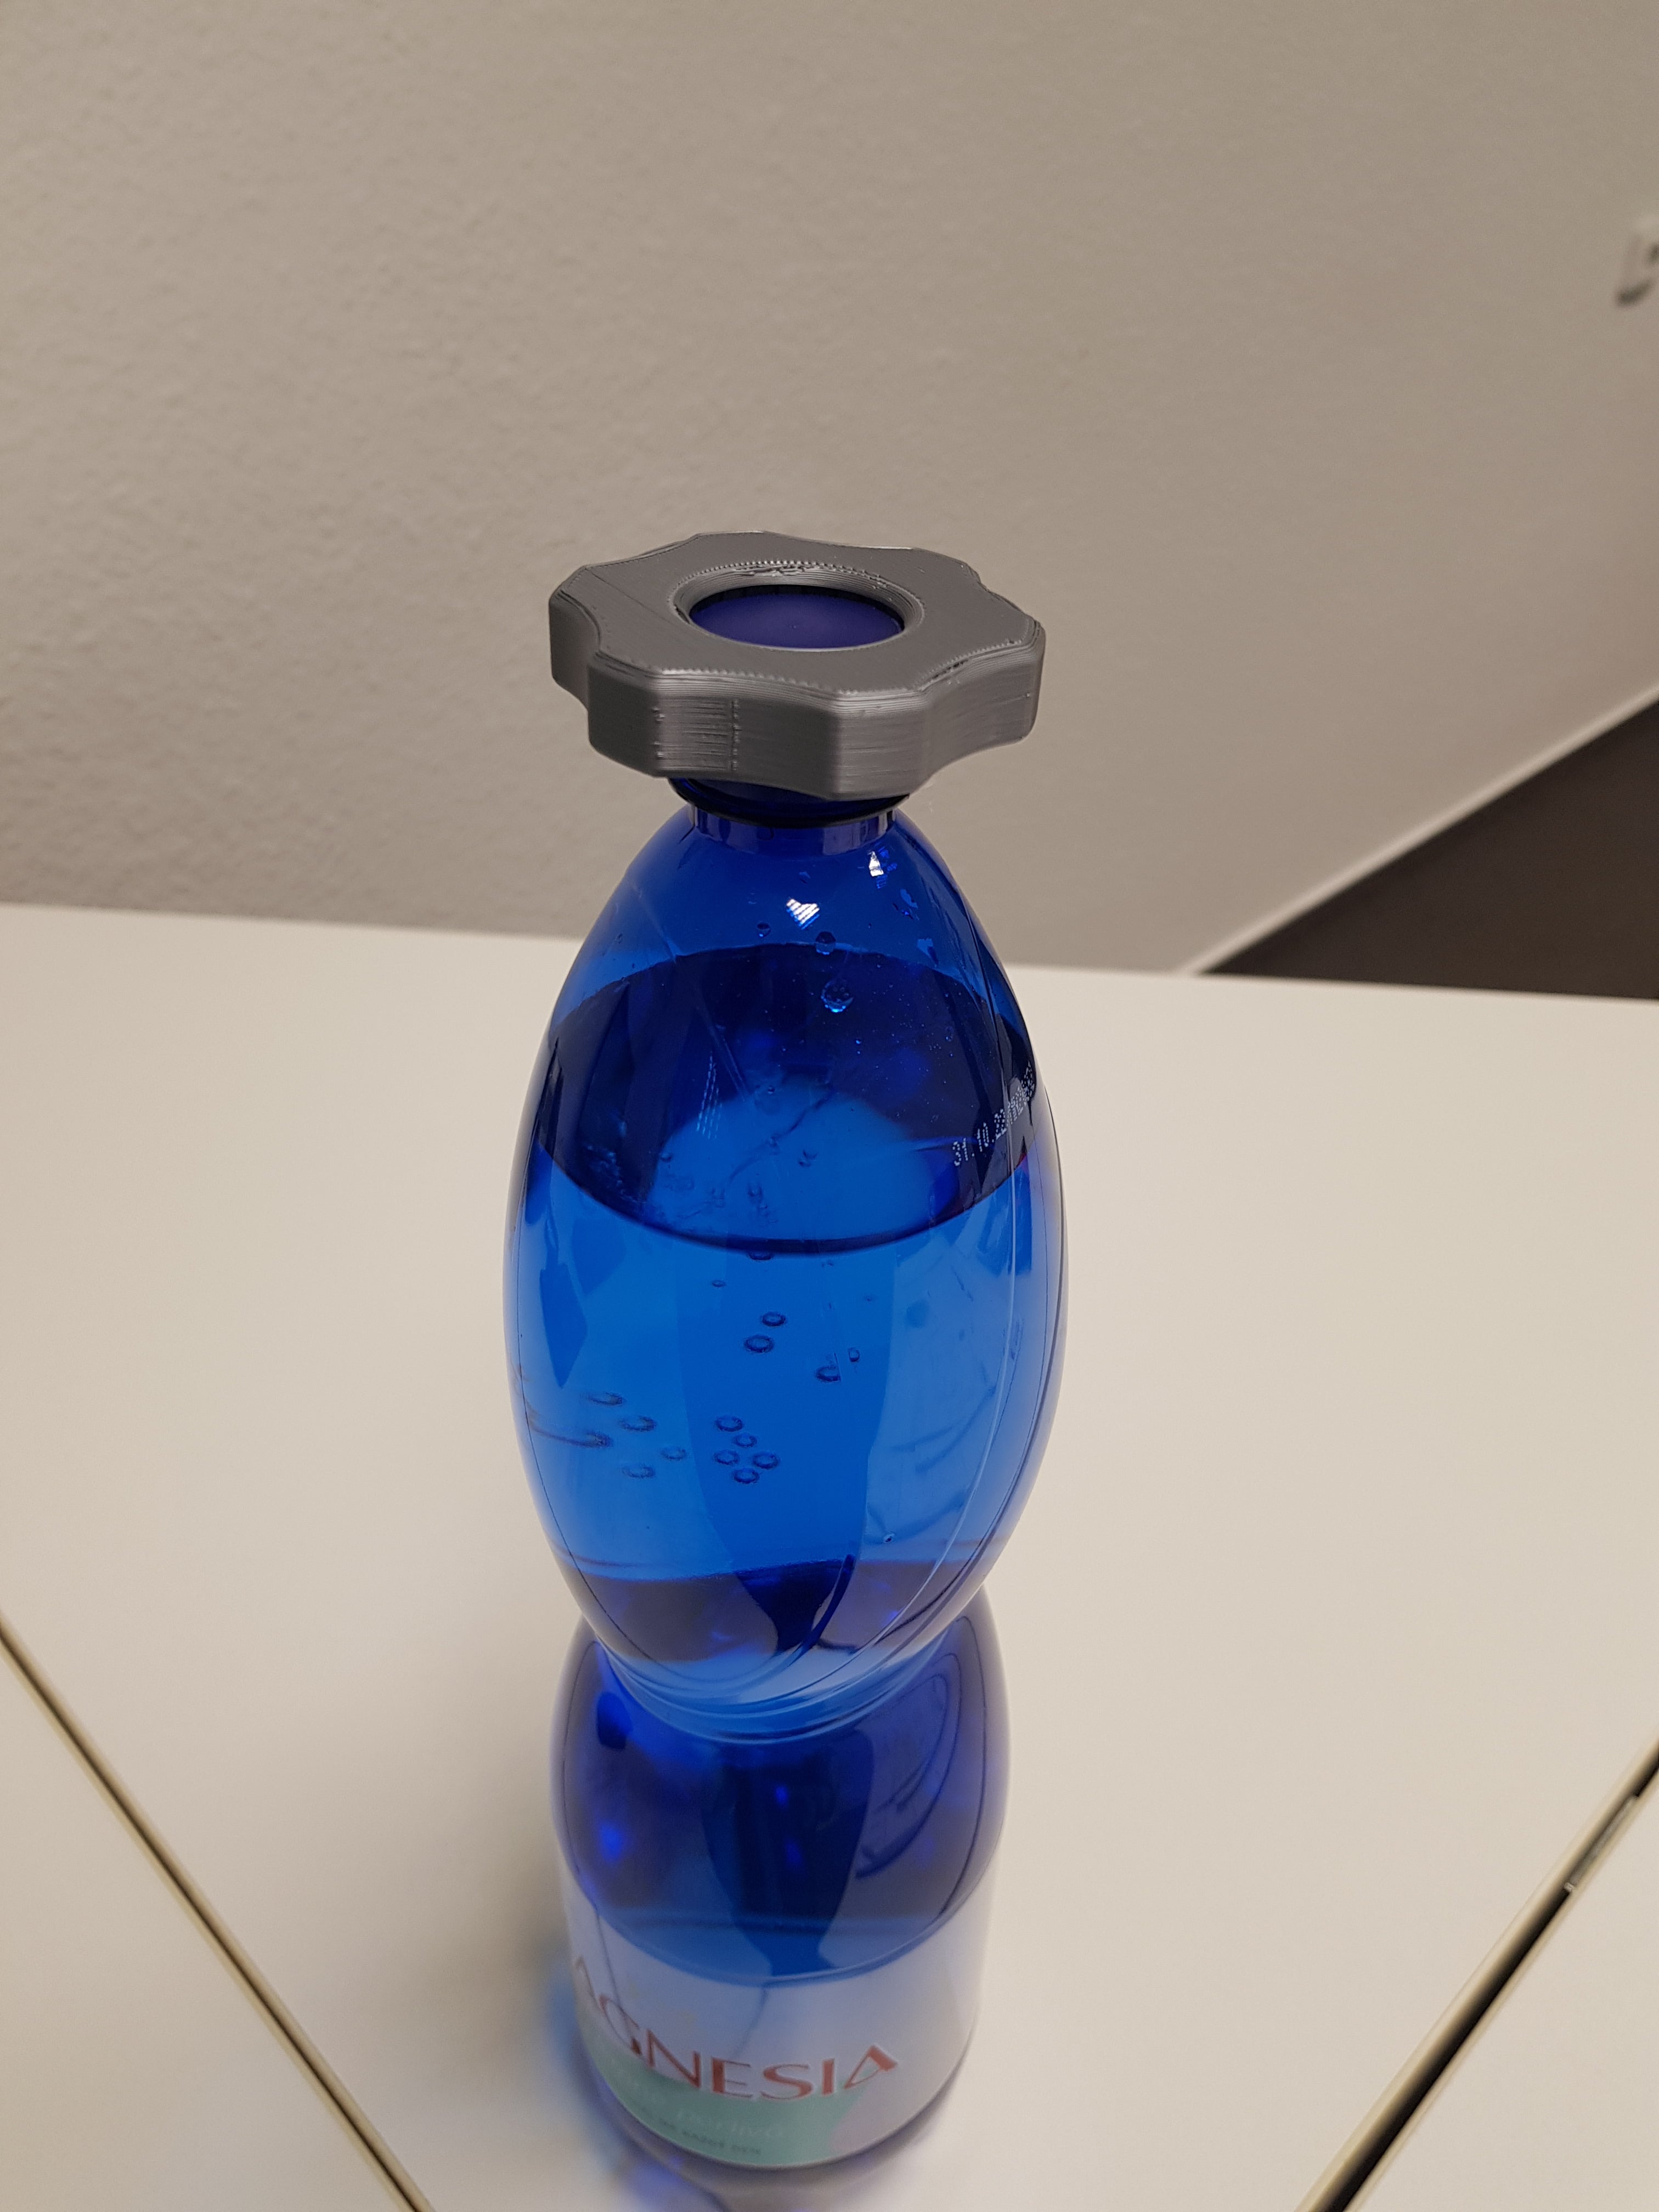 Ανοιχτήρι μπουκαλιών PET με διάμετρο πώματος 29 mm